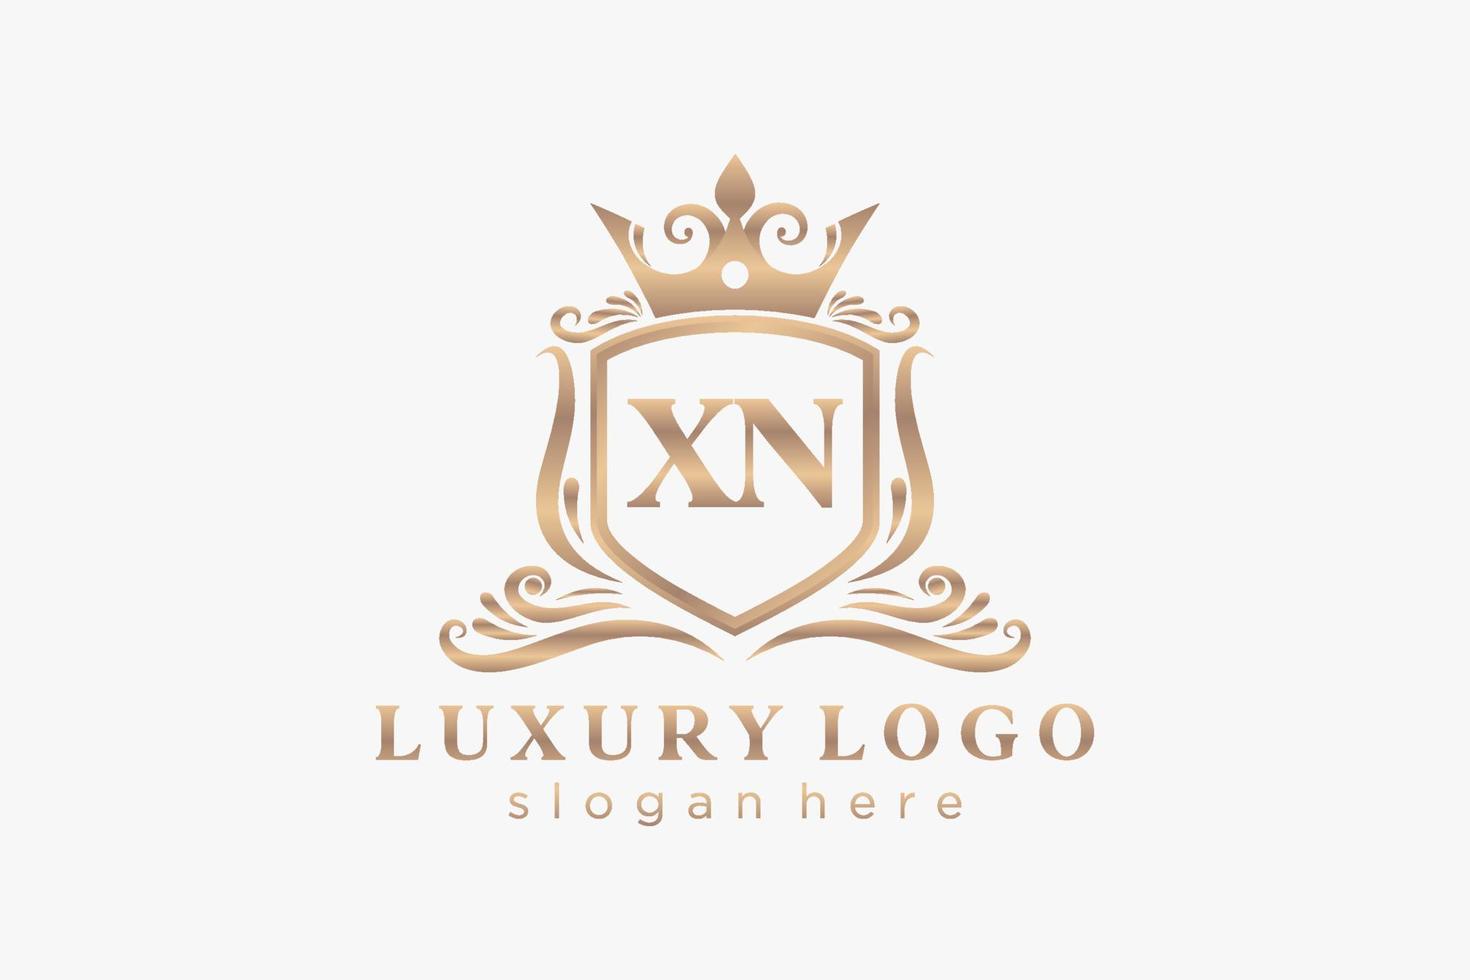 modèle initial de logo de luxe royal de lettre xn dans l'art vectoriel pour le restaurant, la royauté, la boutique, le café, l'hôtel, l'héraldique, les bijoux, la mode et d'autres illustrations vectorielles.